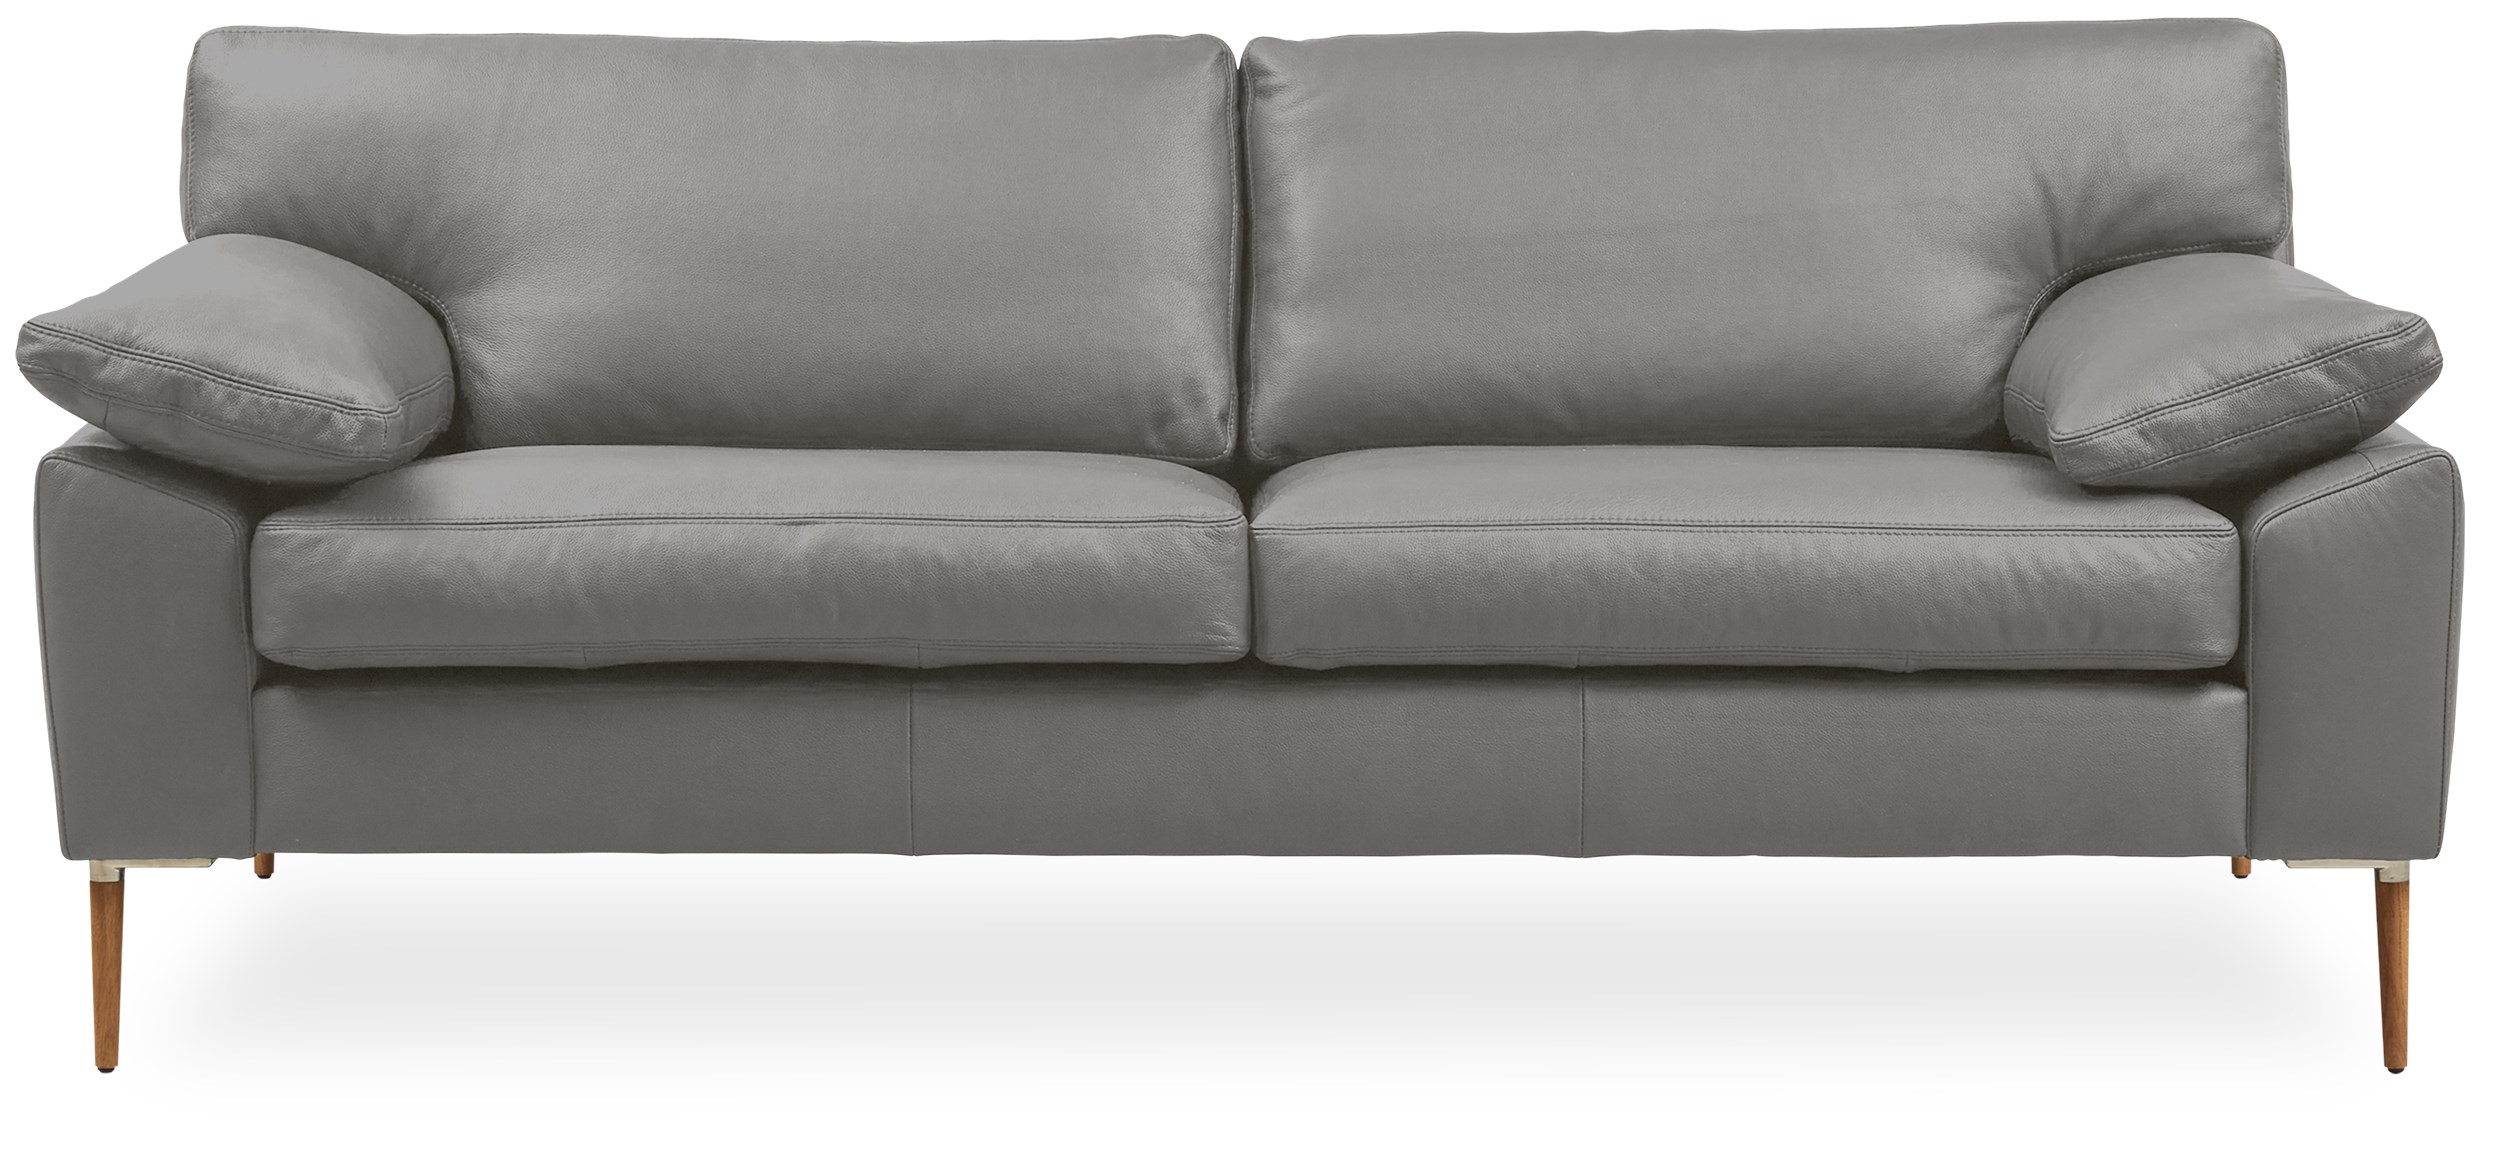 DC 8900 2½ pers. Sofa 